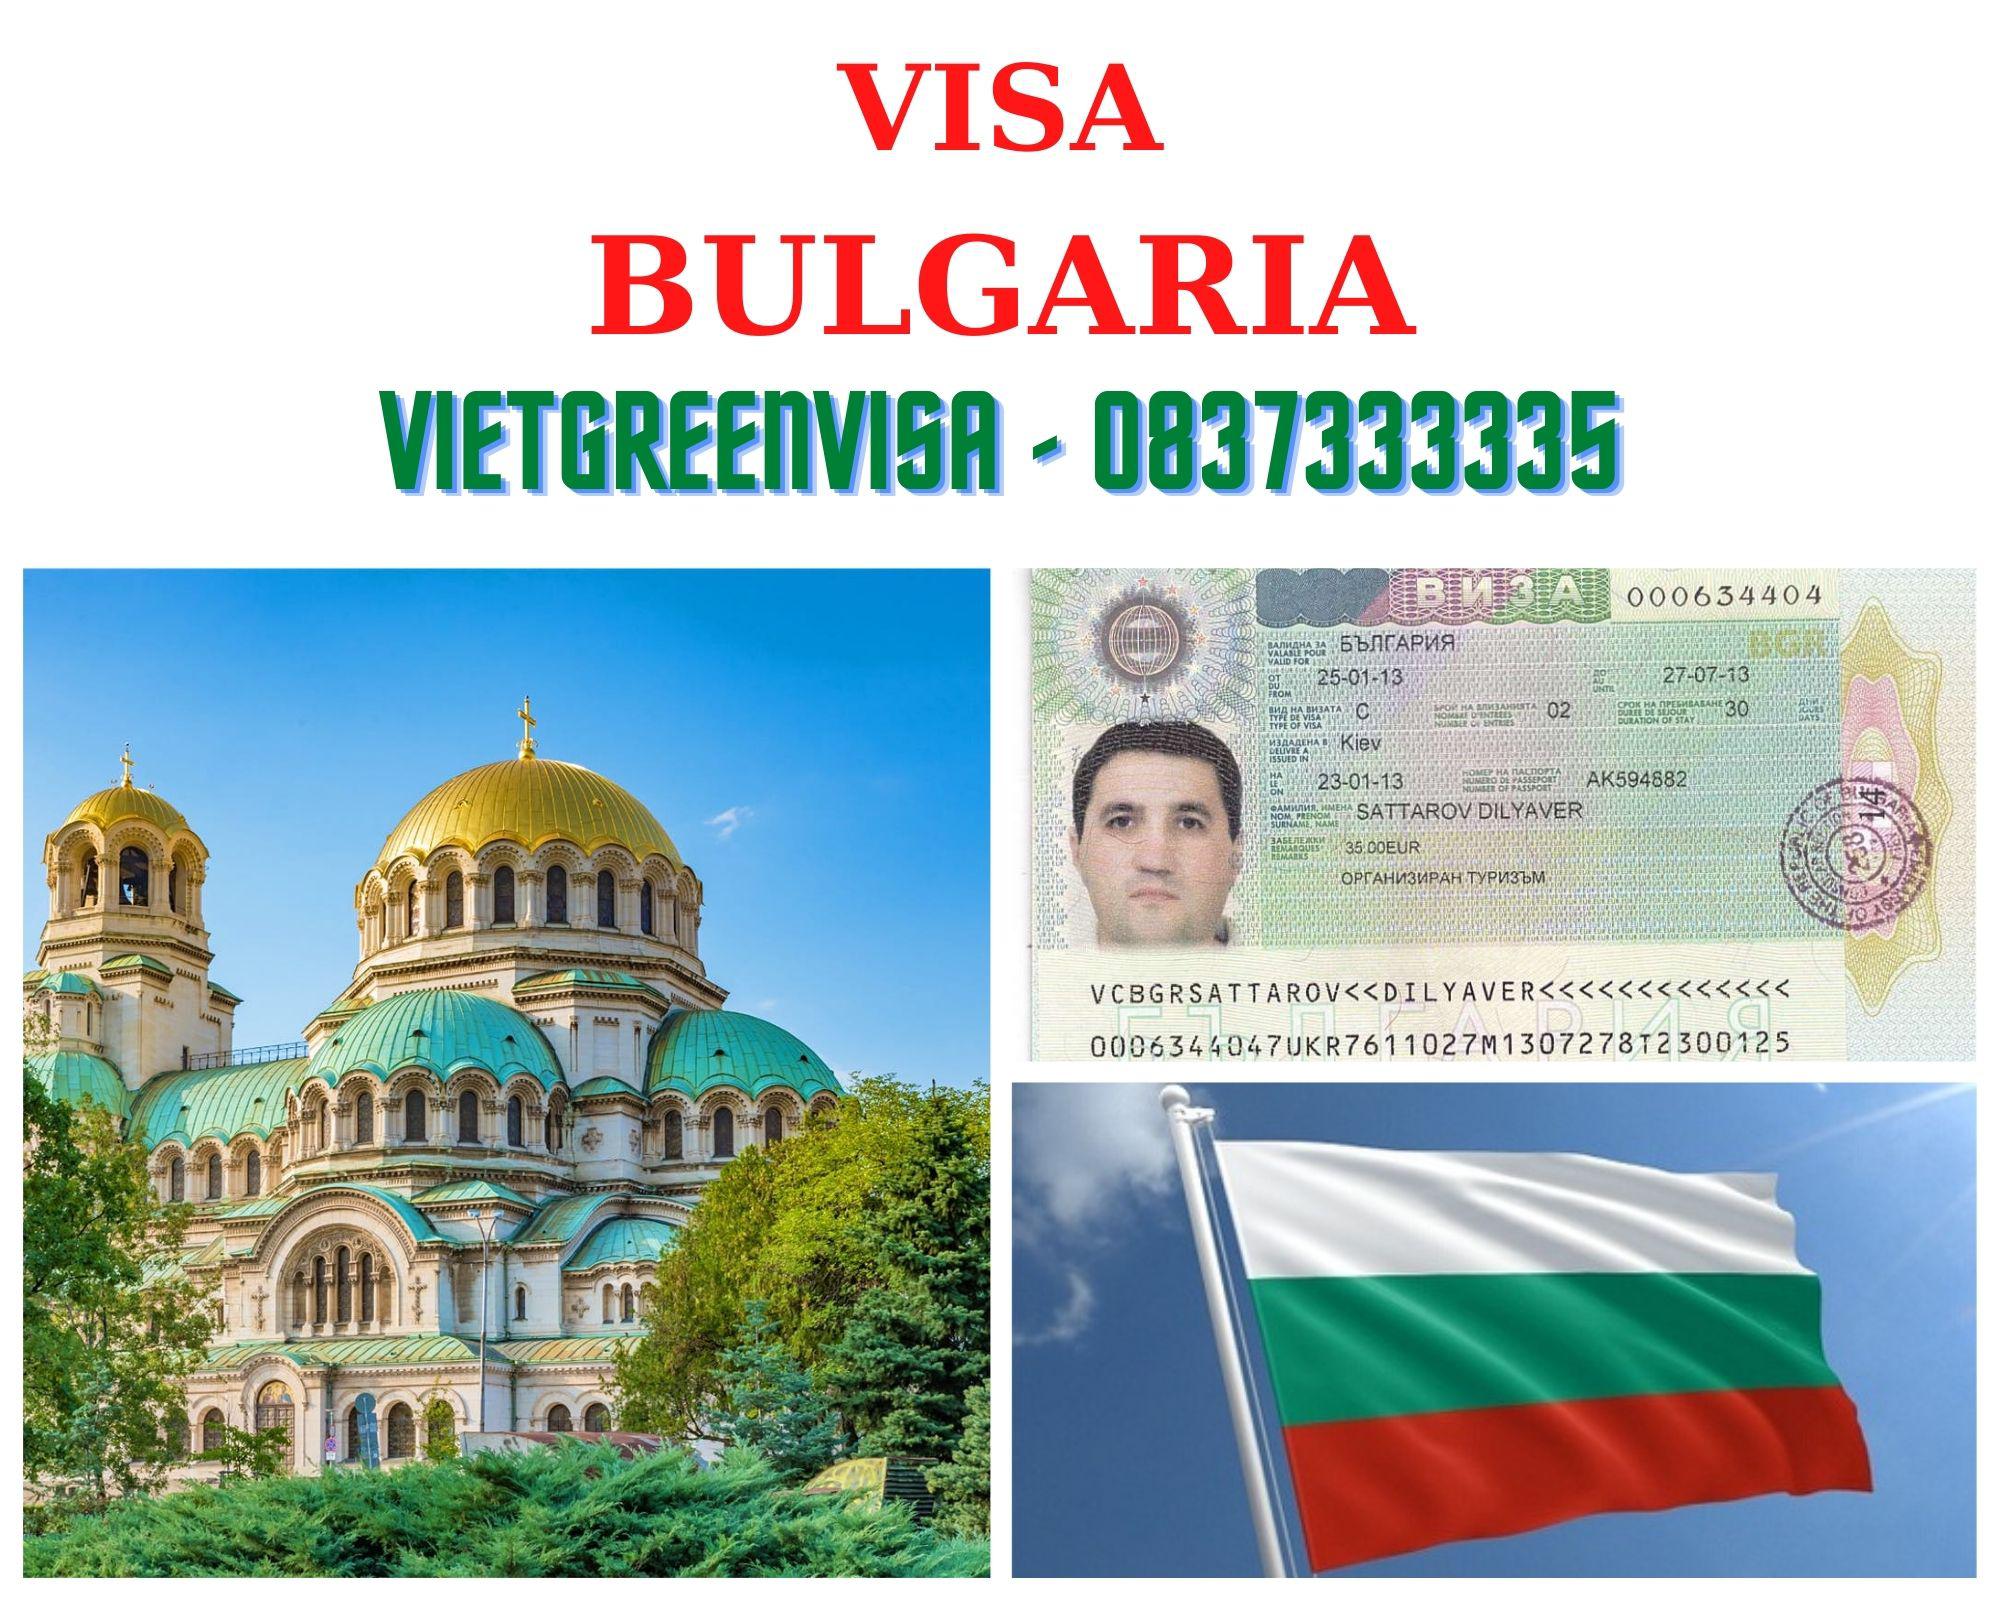 Dịch vụ điền đơn visa Bulgaria online nhanh